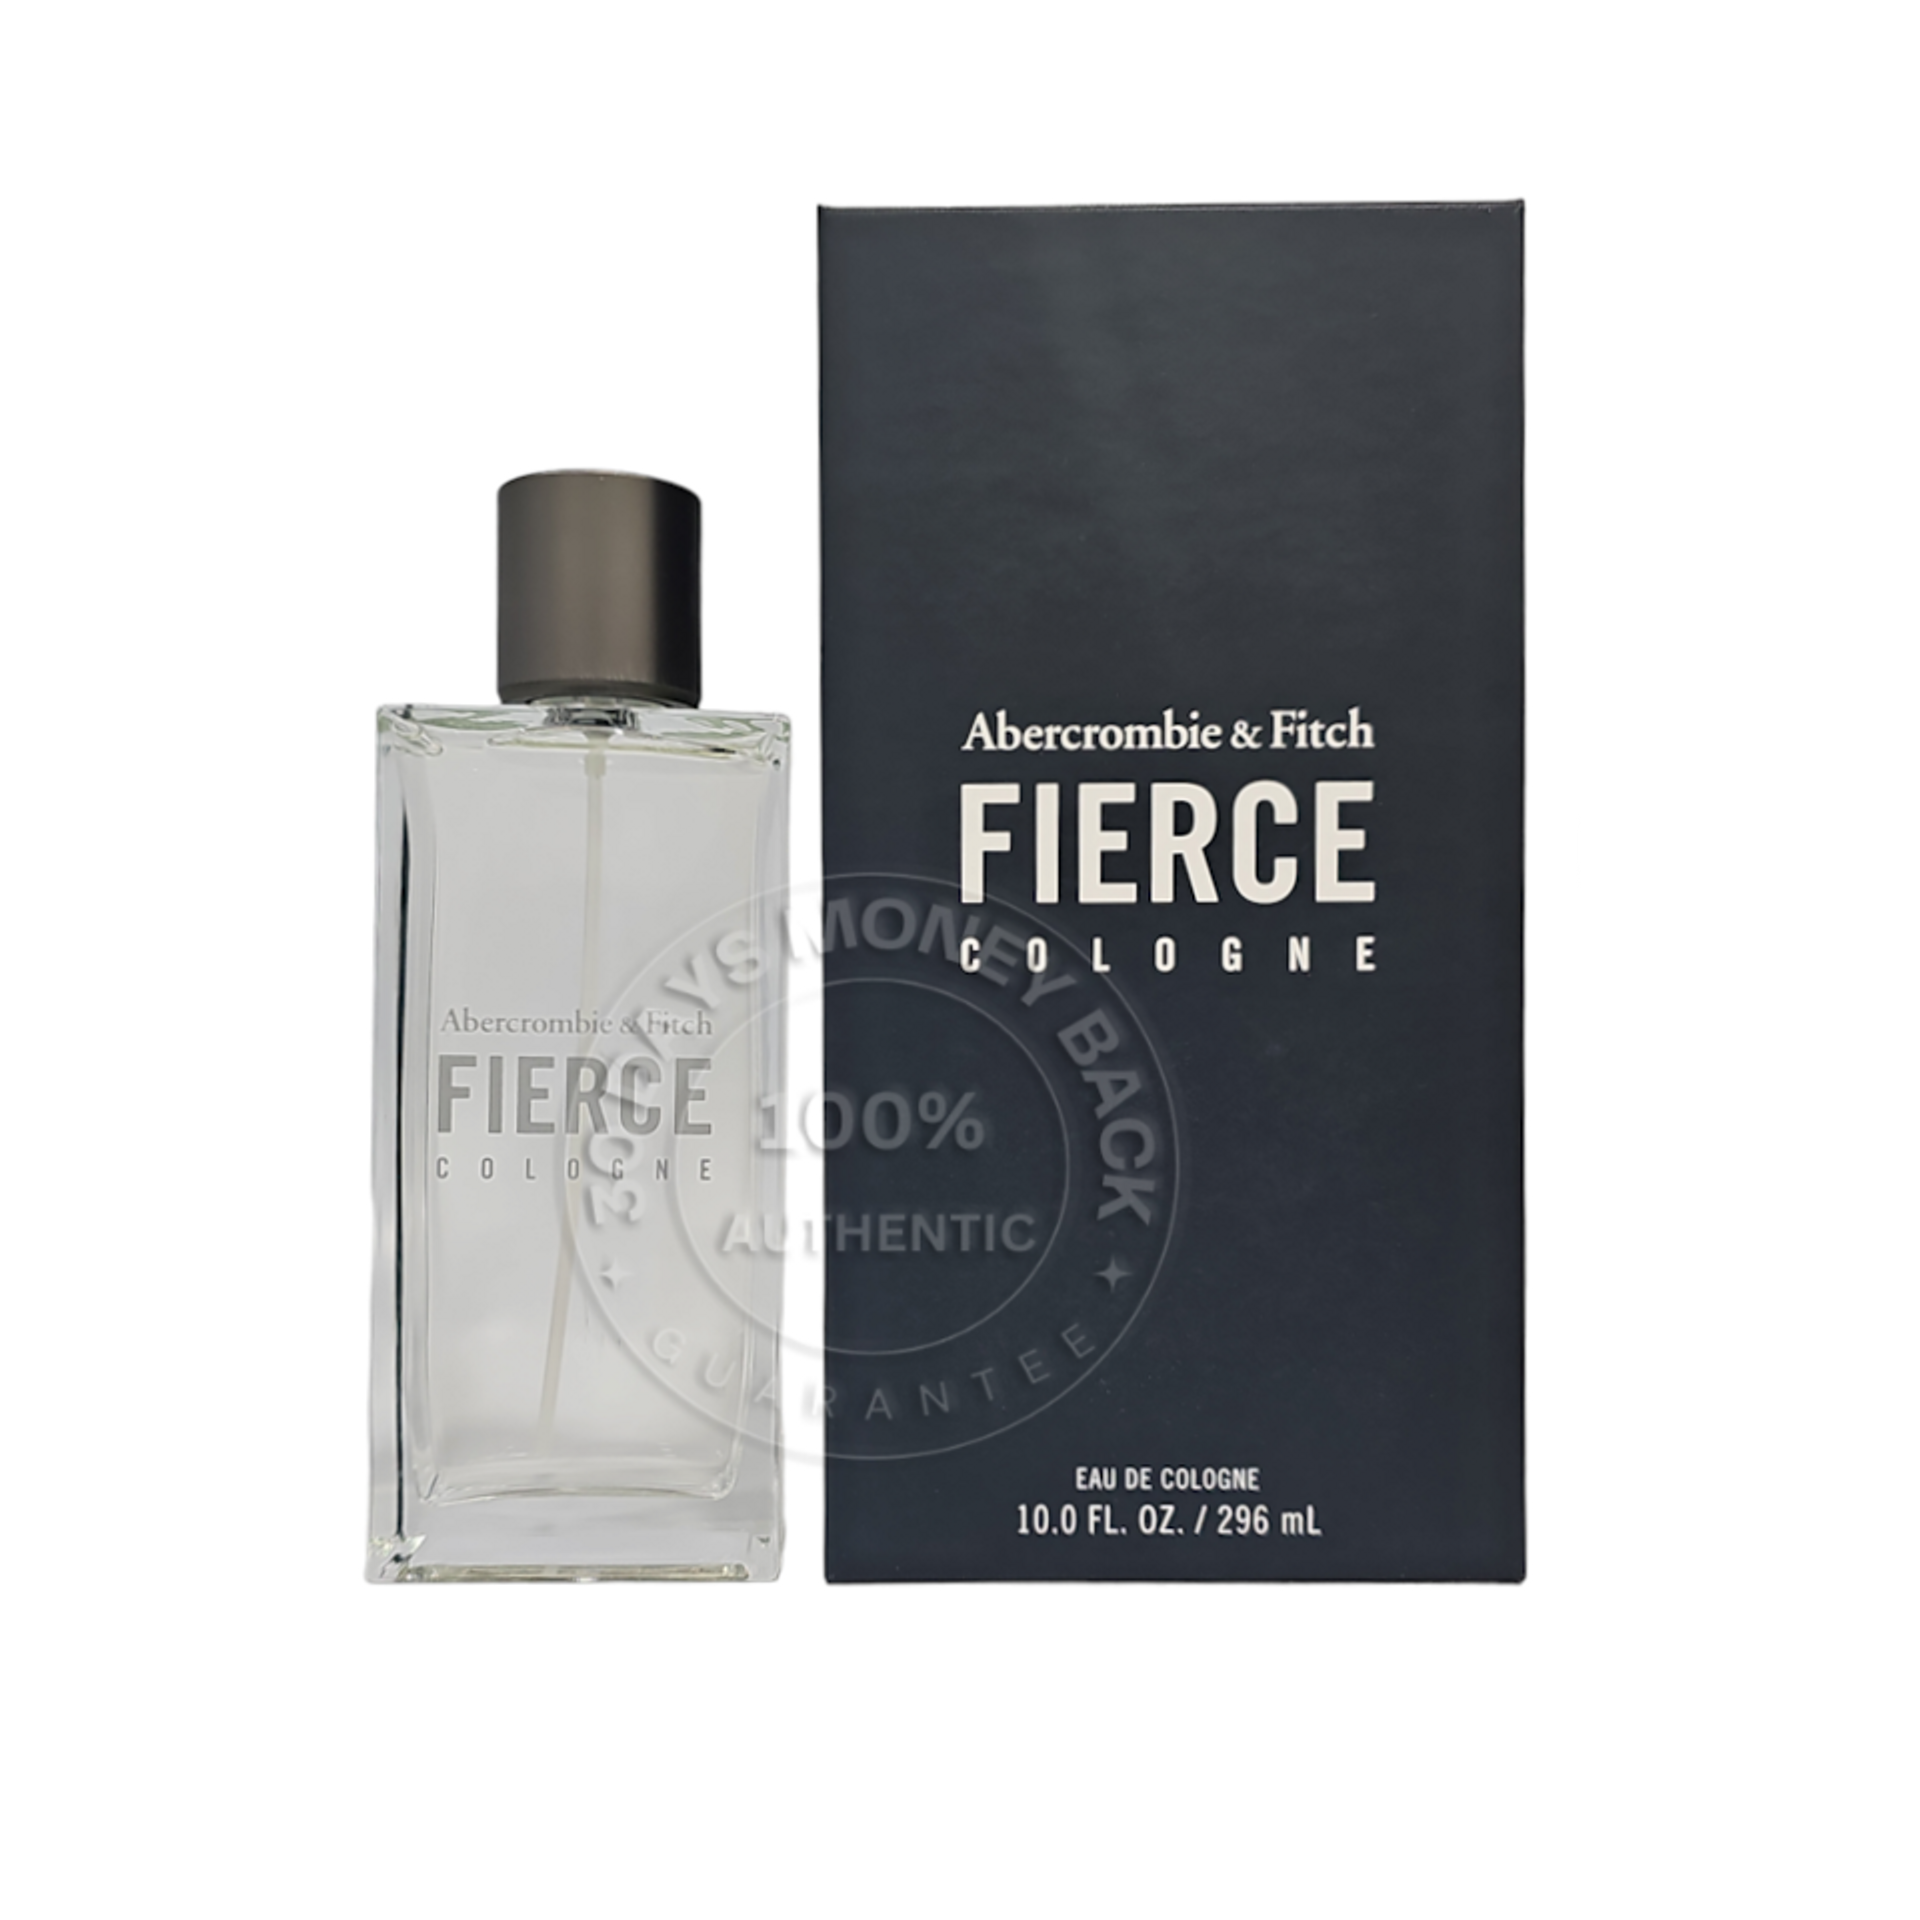 MEN'S FRAGRANCES fragrances4ever.com fragrances4ever.com